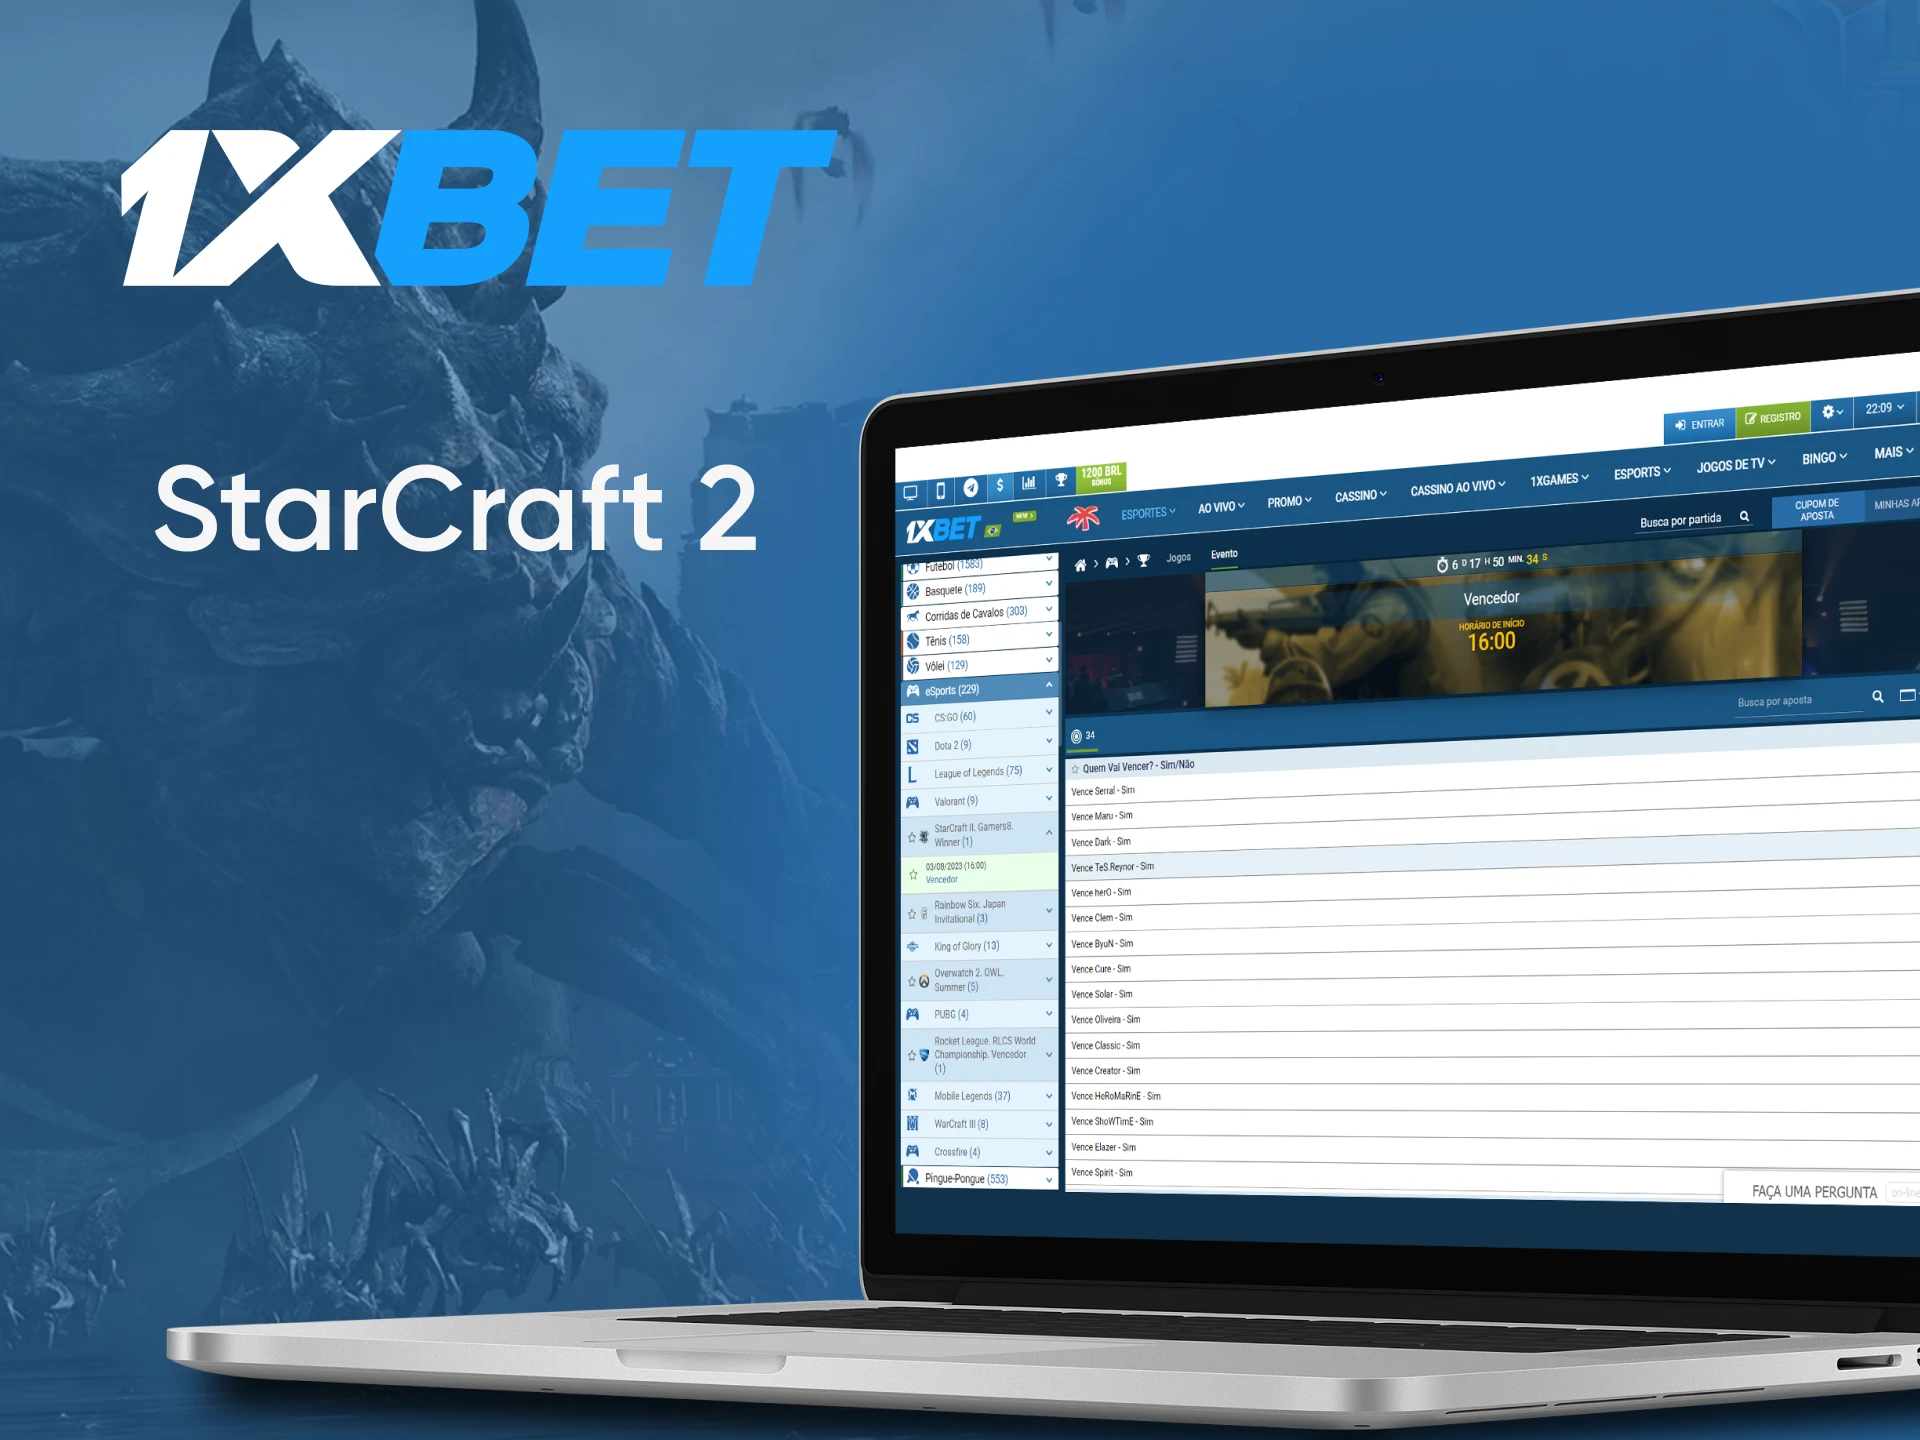 Para apostas em eSports da 1xbet, escolha StarCraft 2.